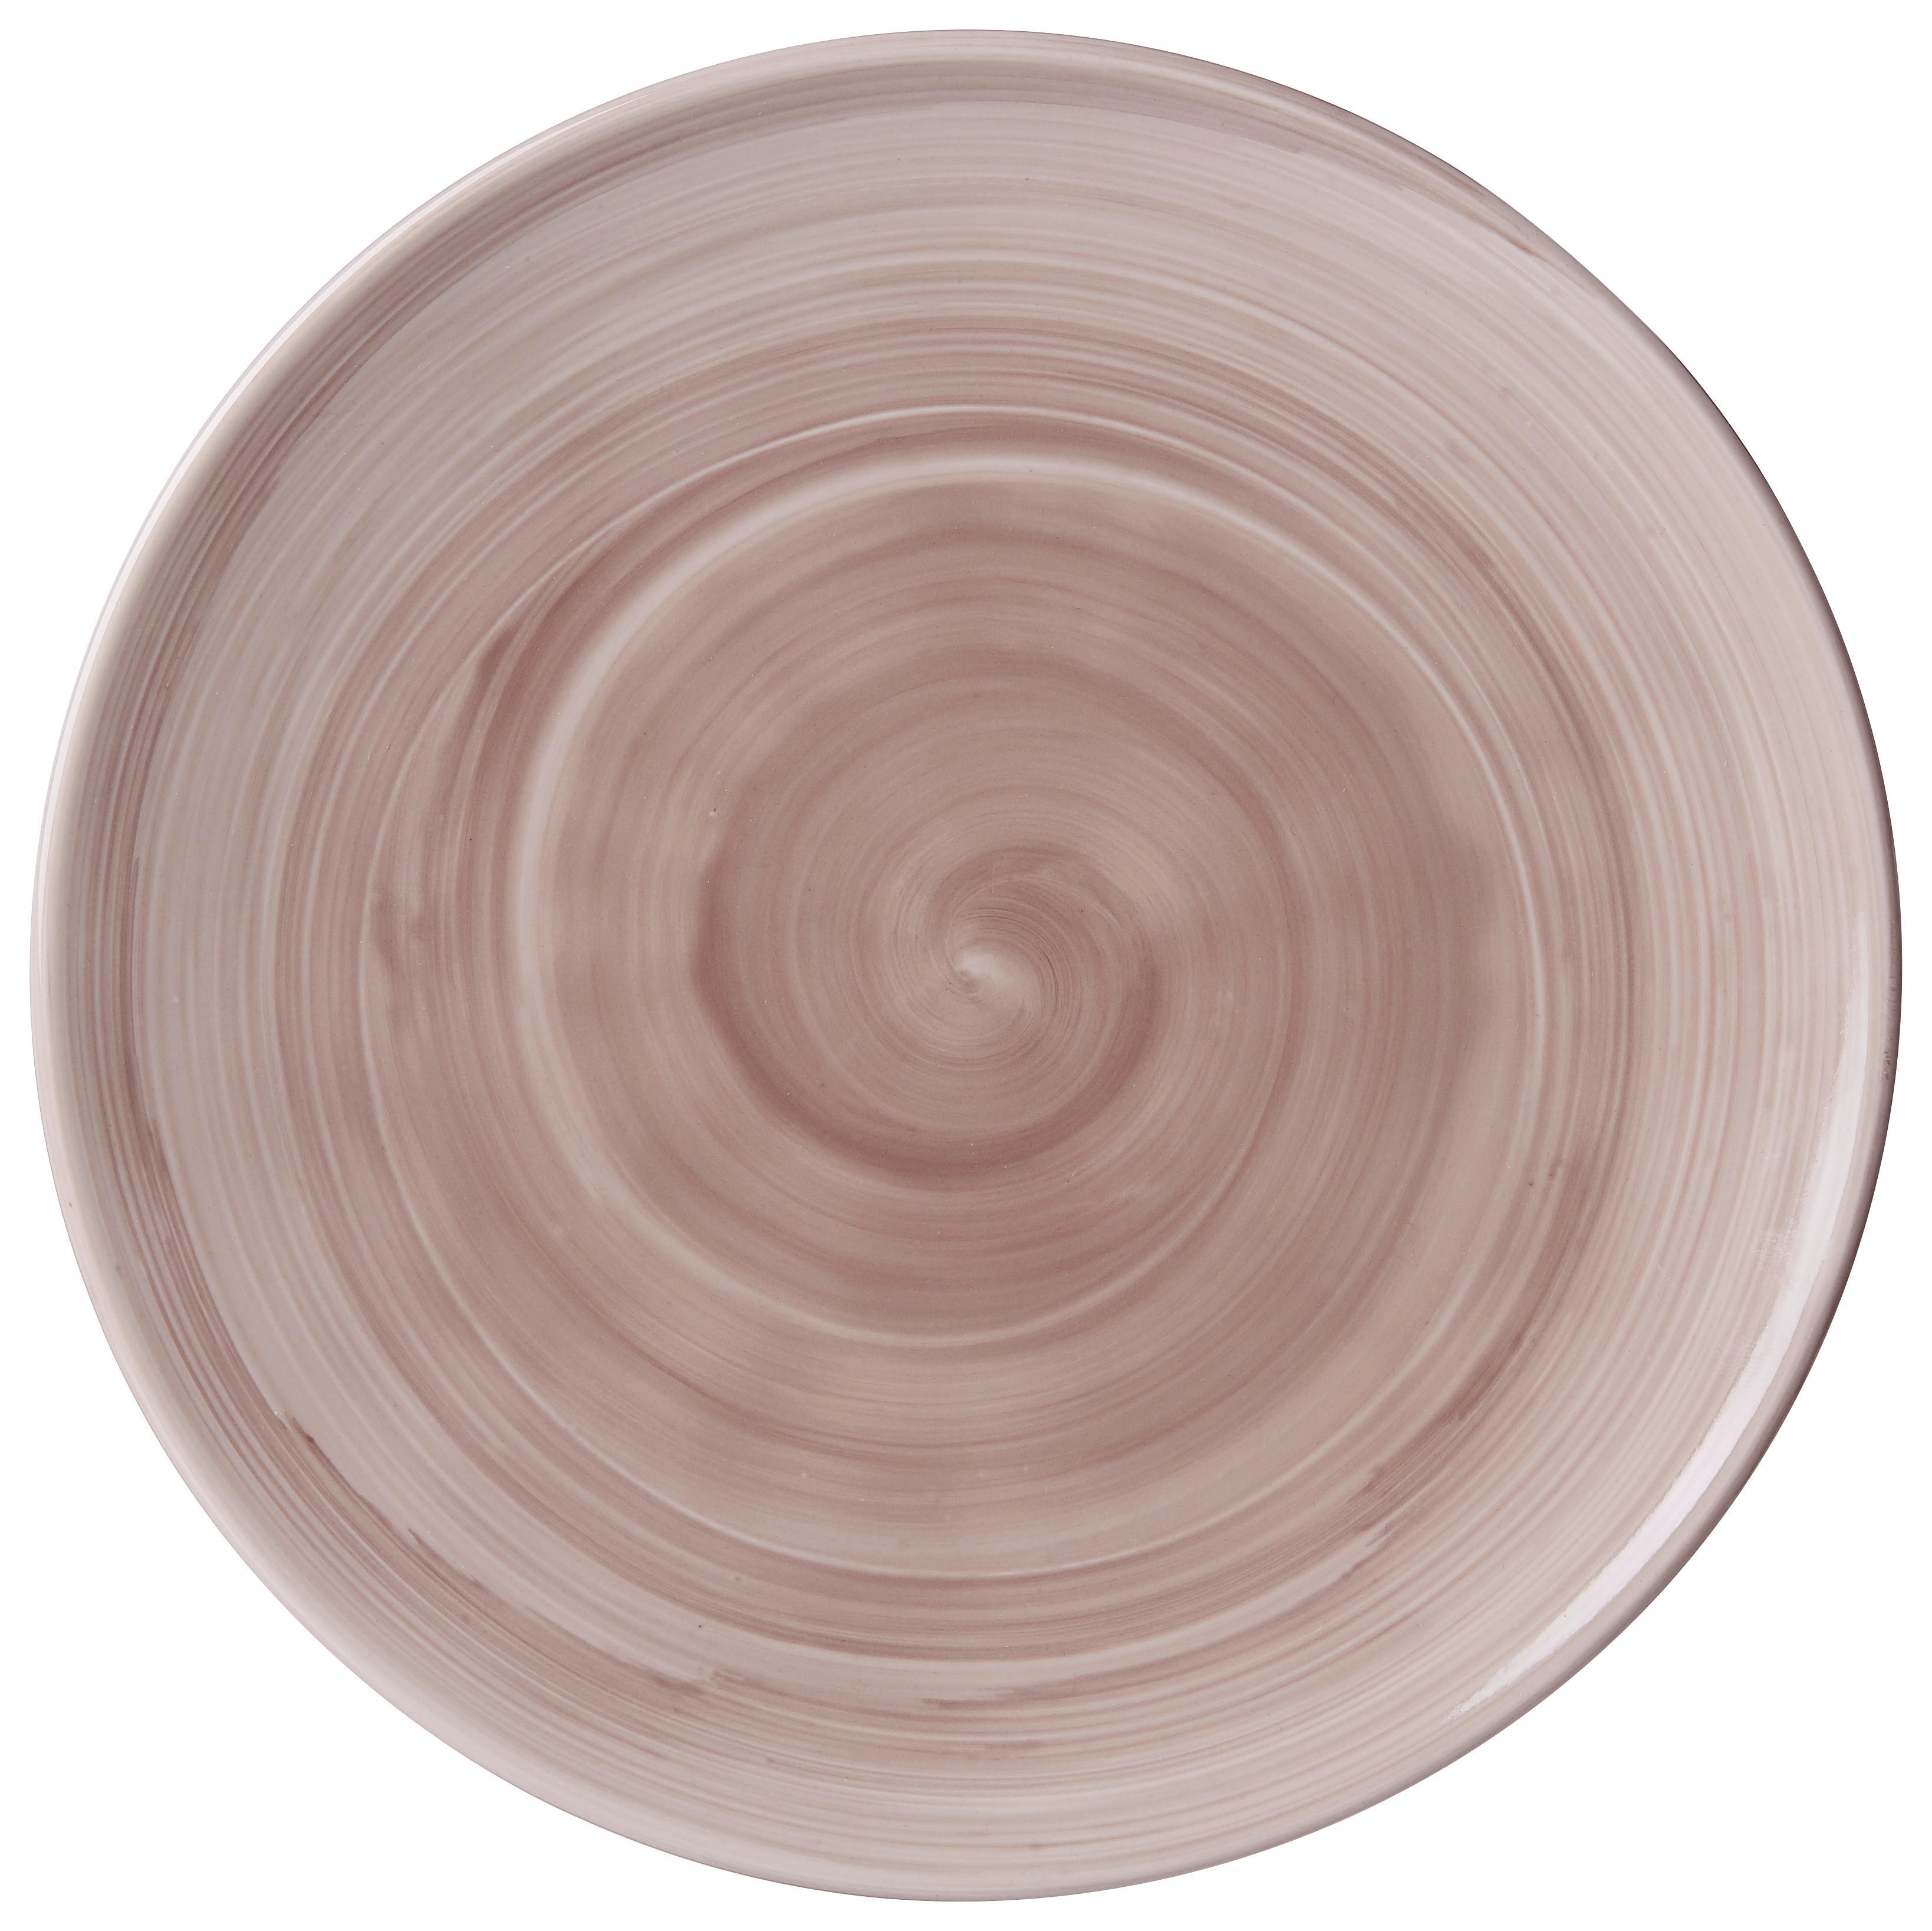 Ritzenhoff Breker MĚLKÝ TALÍŘ, keramika, 26 cm - hnědá